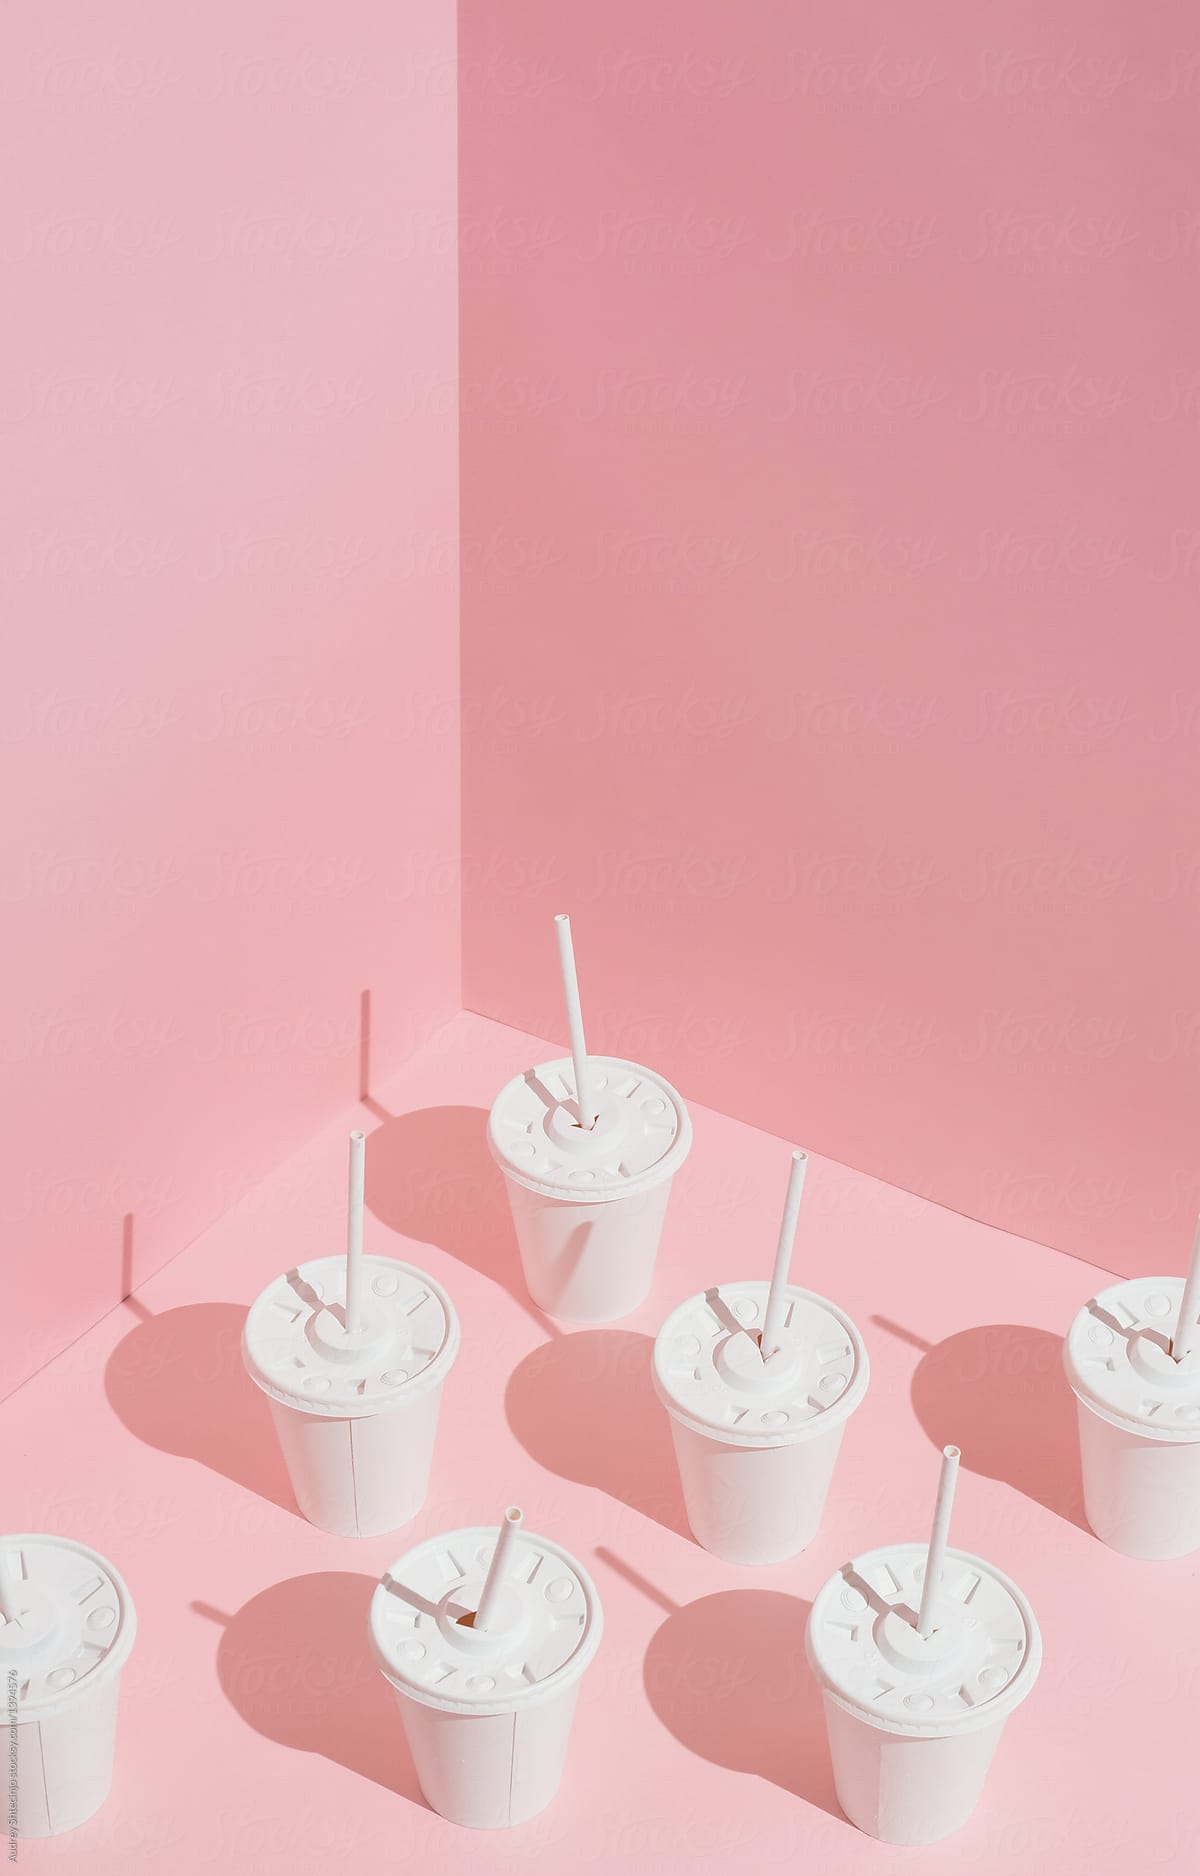 Milkshake/smoothie/Juice cups with straws.Junk food series